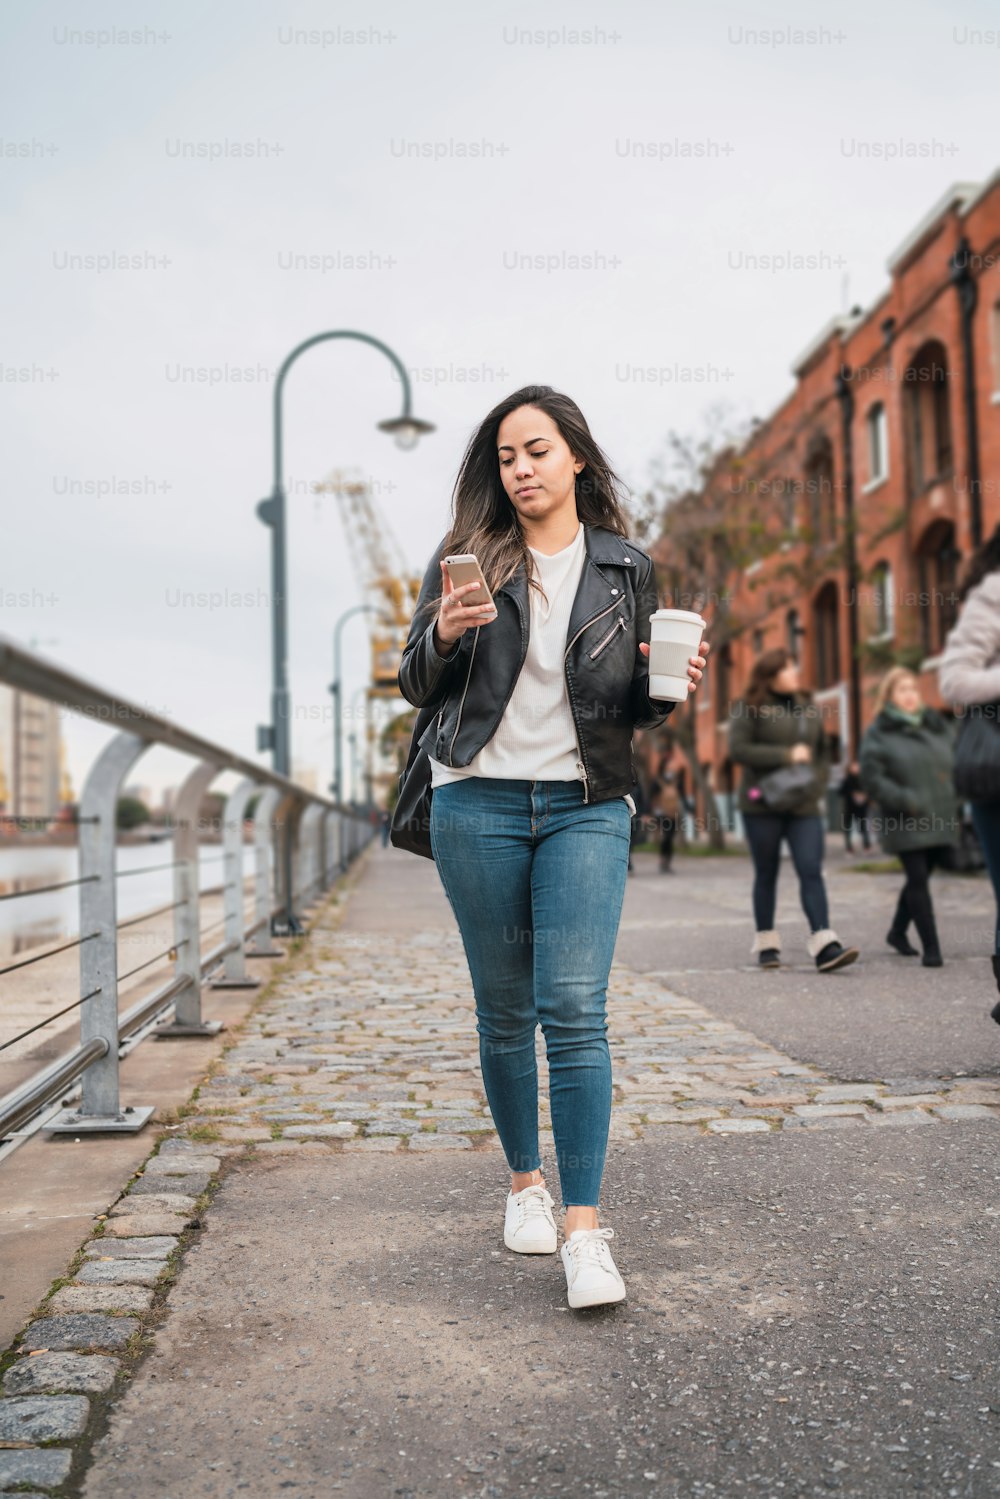 Retrato de una mujer joven usando su teléfono móvil mientras camina con una taza de café. Concepto urbano y de comunicación.